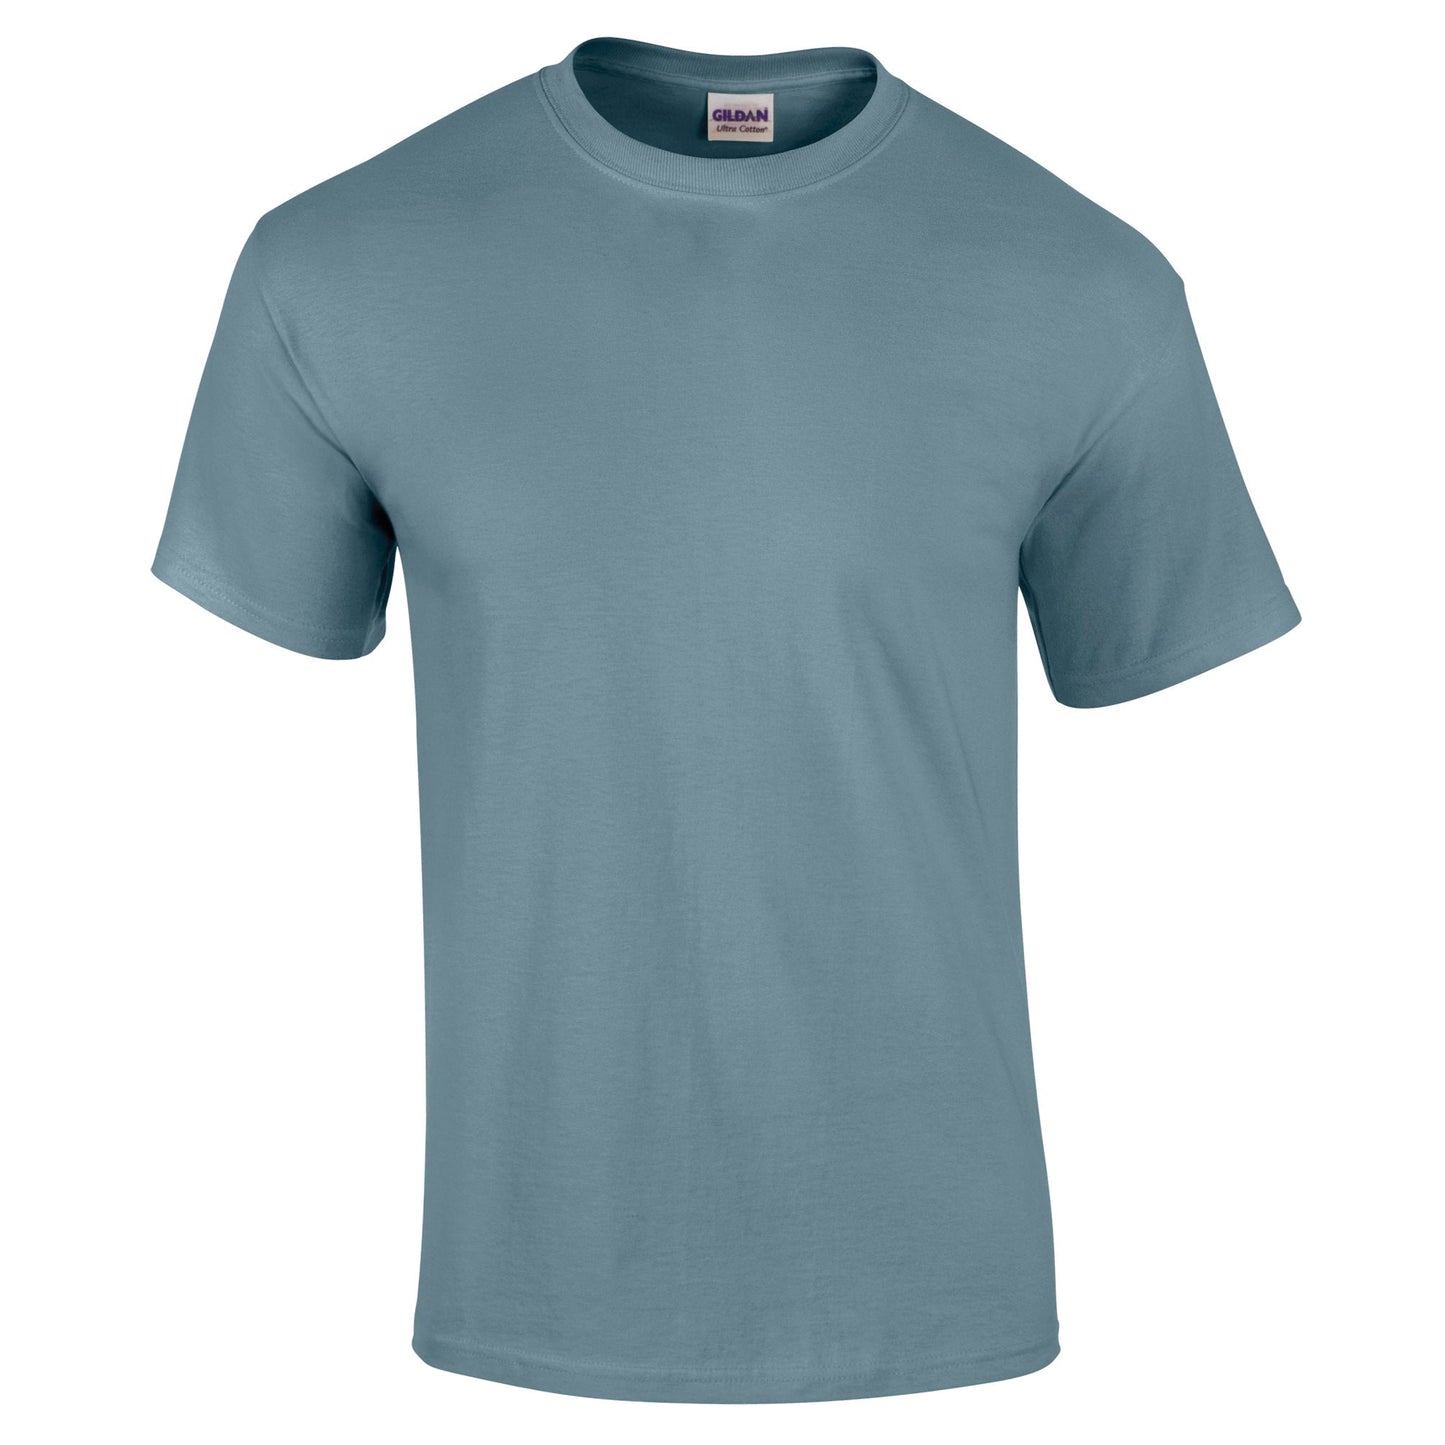 X5CAPE Custom T-Shirt - Neutral Colours